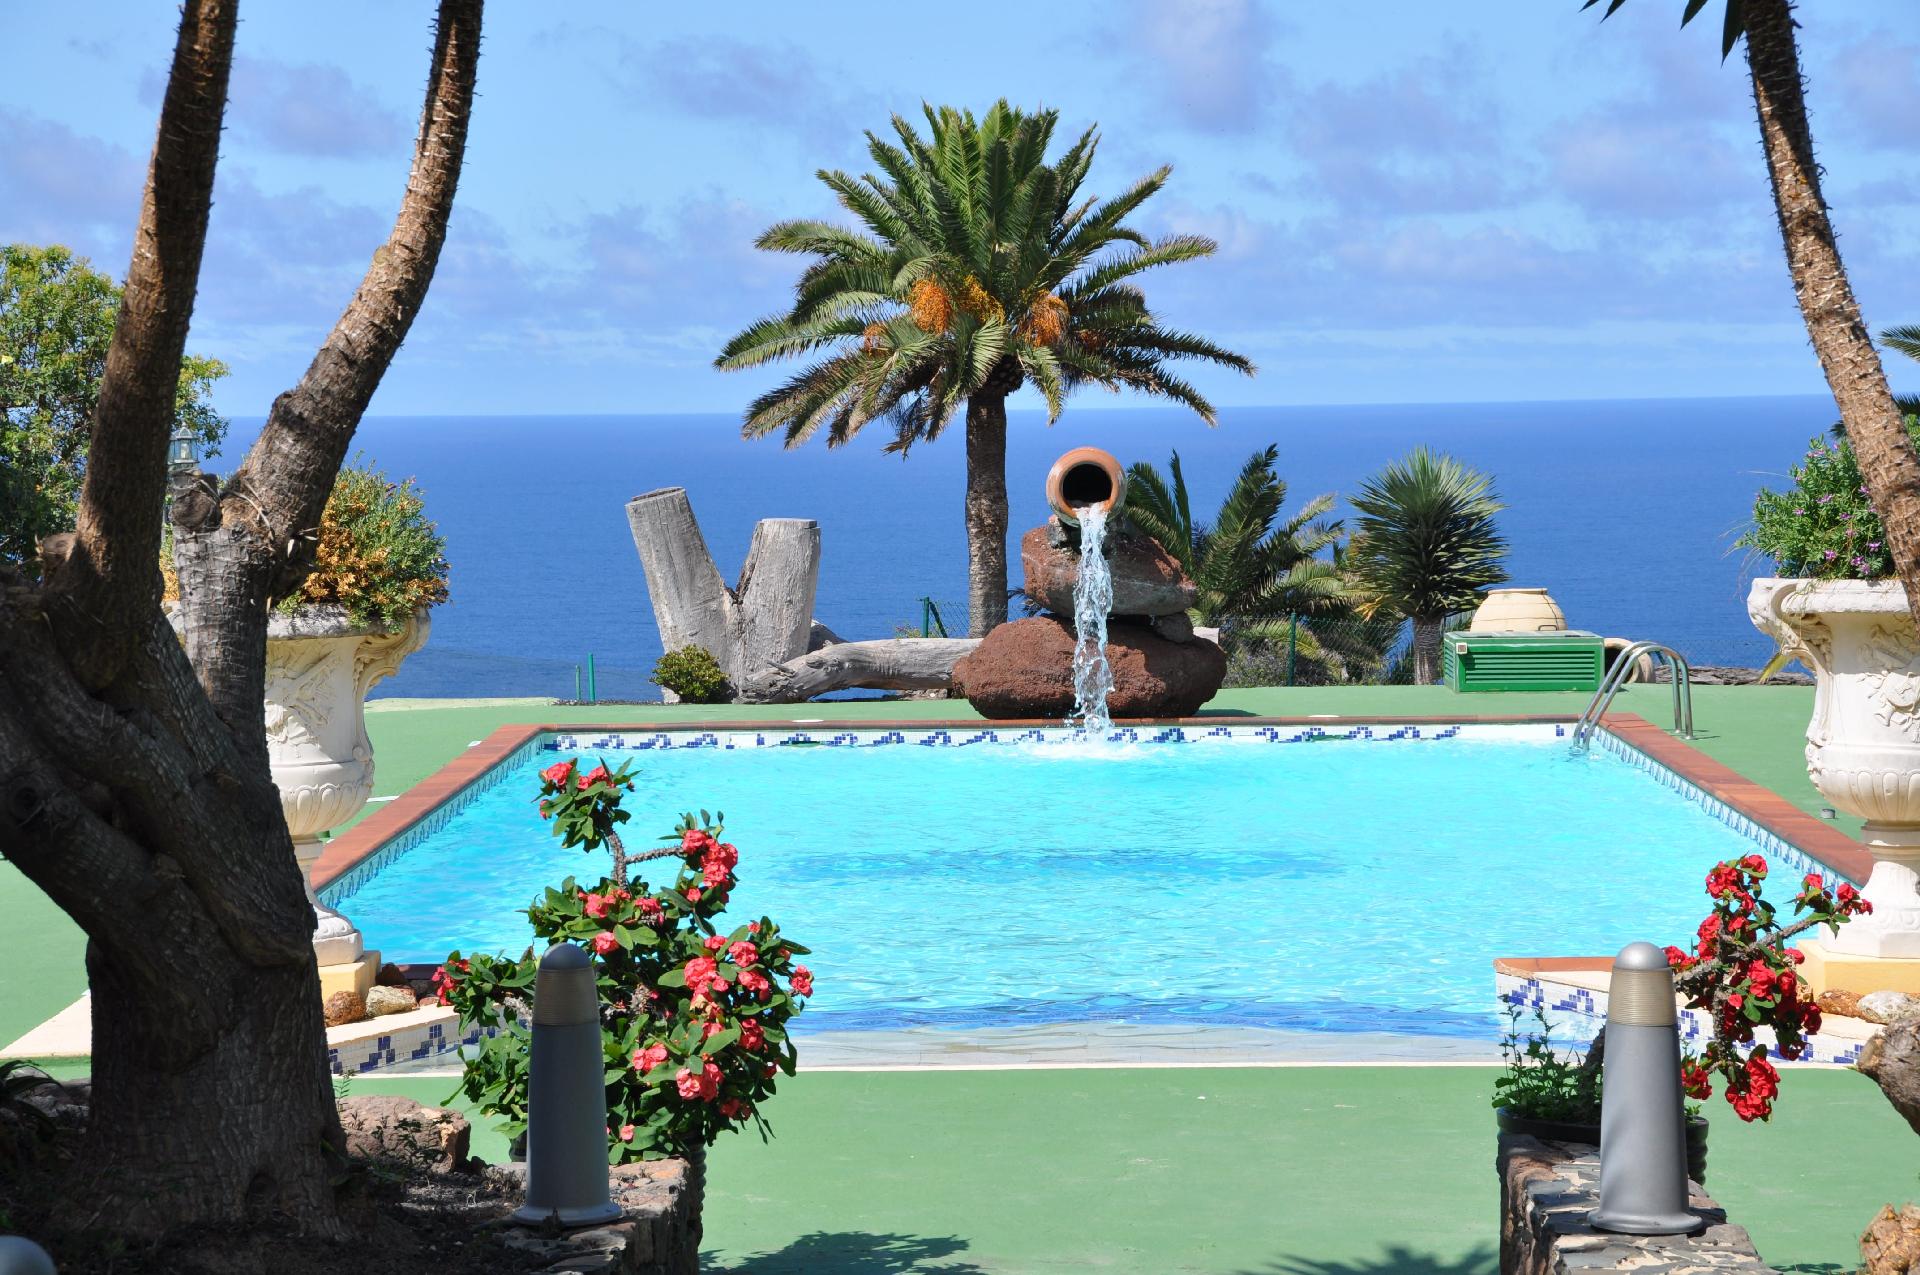 Villa im Kolonialstil mit Pool auf einer weitl&aum Ferienhaus in Spanien